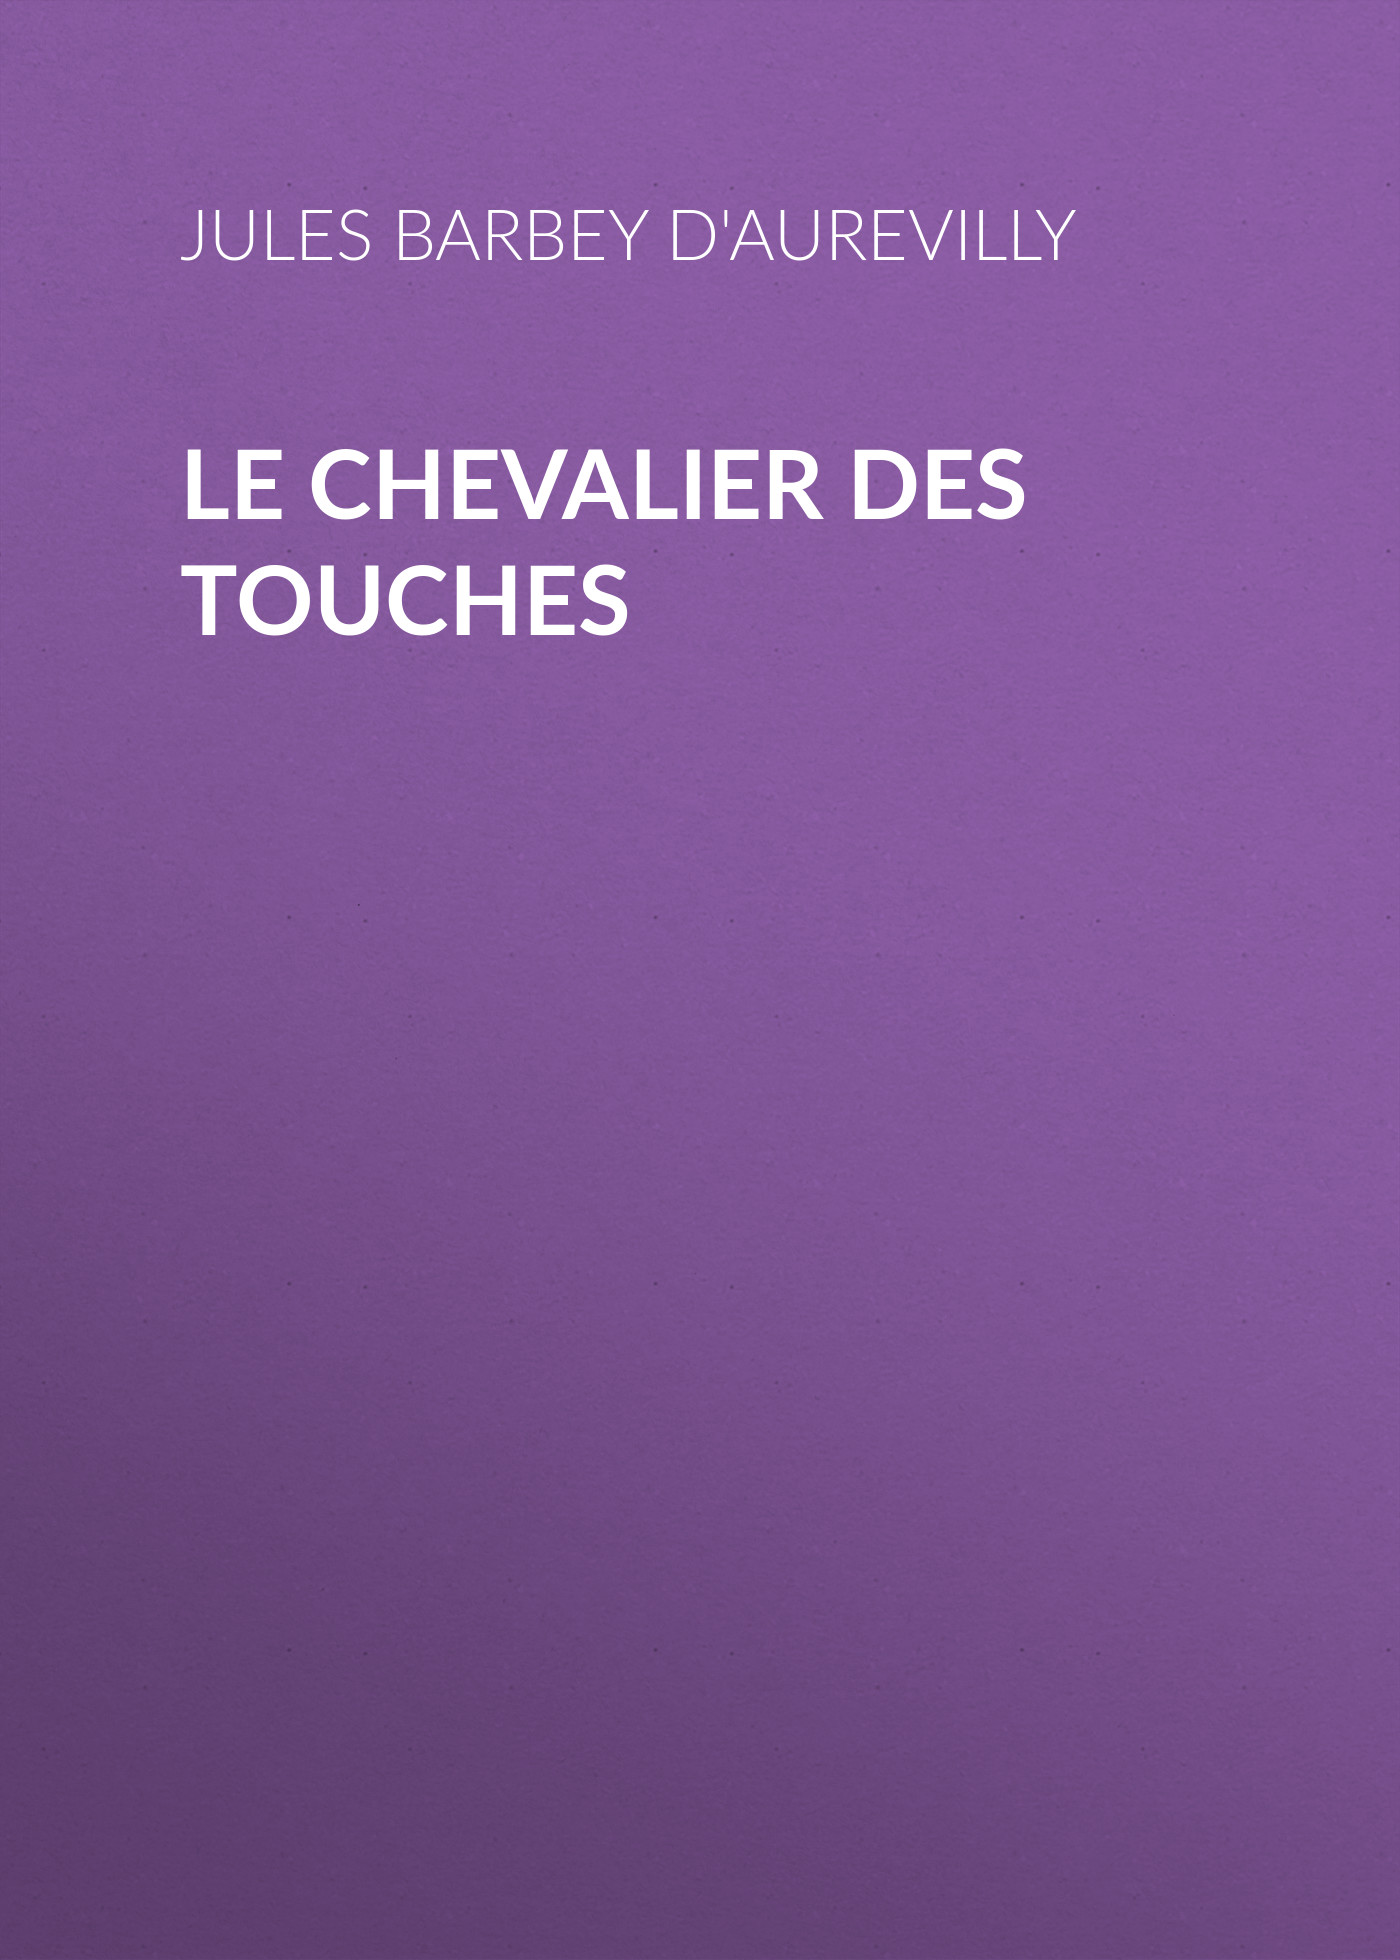 Книга Le Chevalier des Touches из серии , созданная Jules Barbey d'Aurevilly, может относится к жанру Зарубежная старинная литература, Зарубежная классика, Историческая литература. Стоимость электронной книги Le Chevalier des Touches с идентификатором 24171252 составляет 0.90 руб.